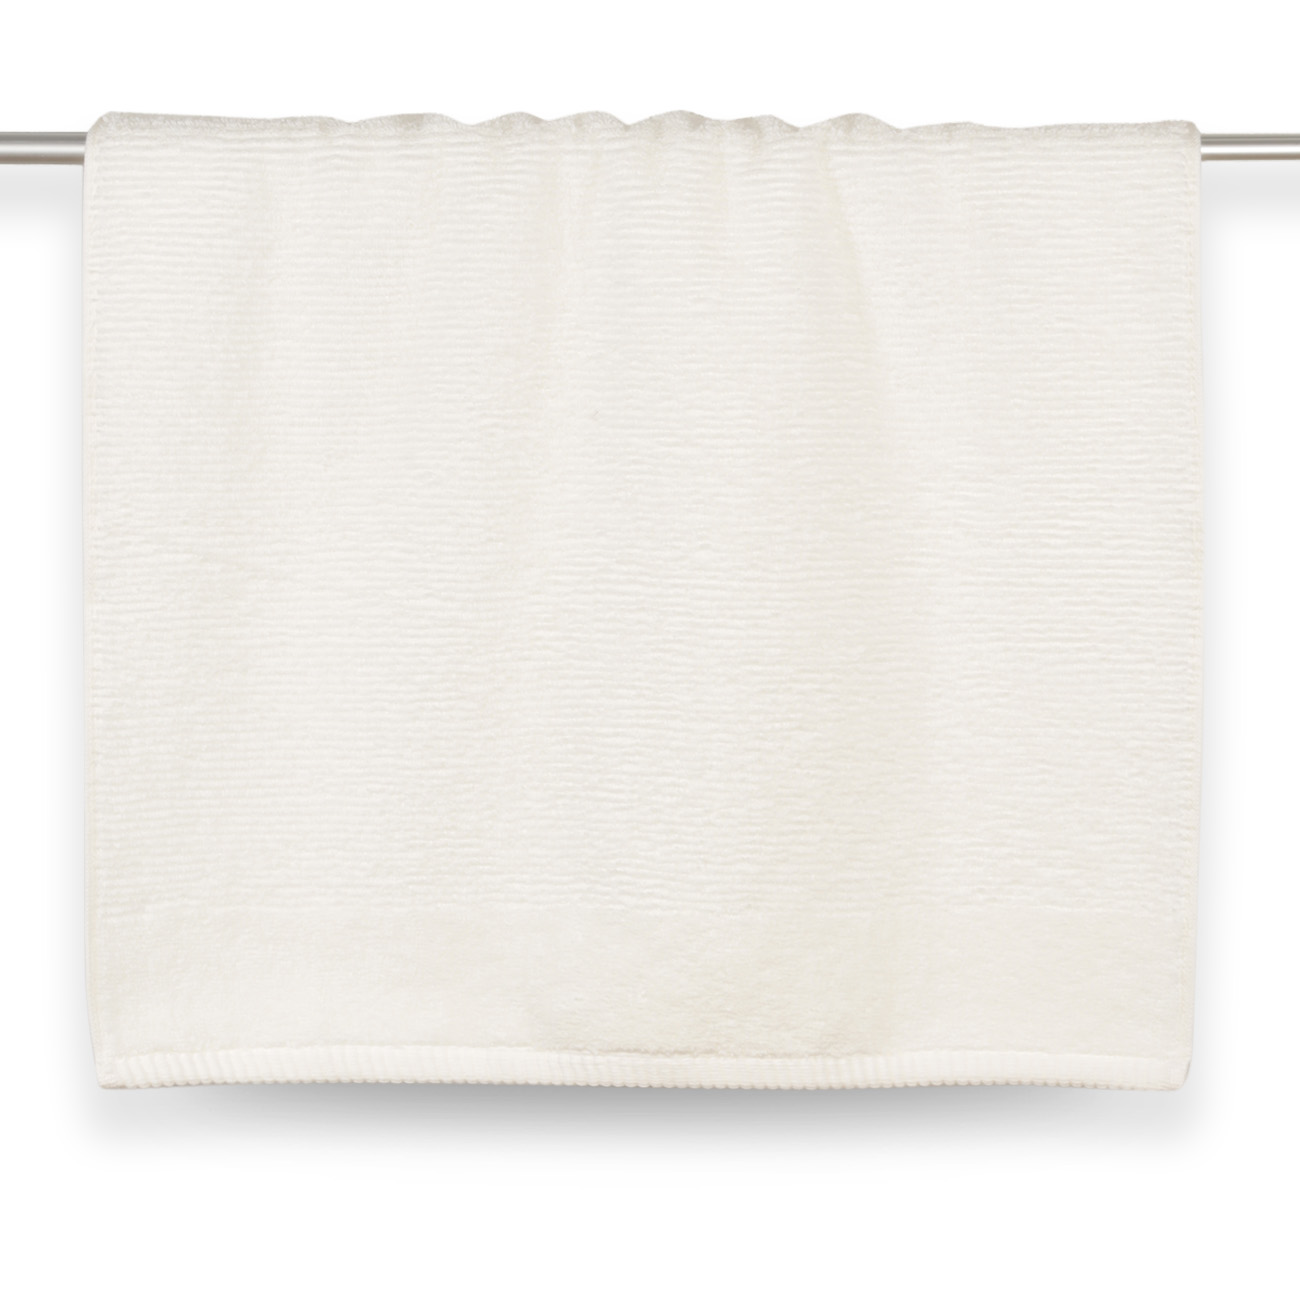 Towel, 50x90 cm, cotton, white, Terry cotton изображение № 2